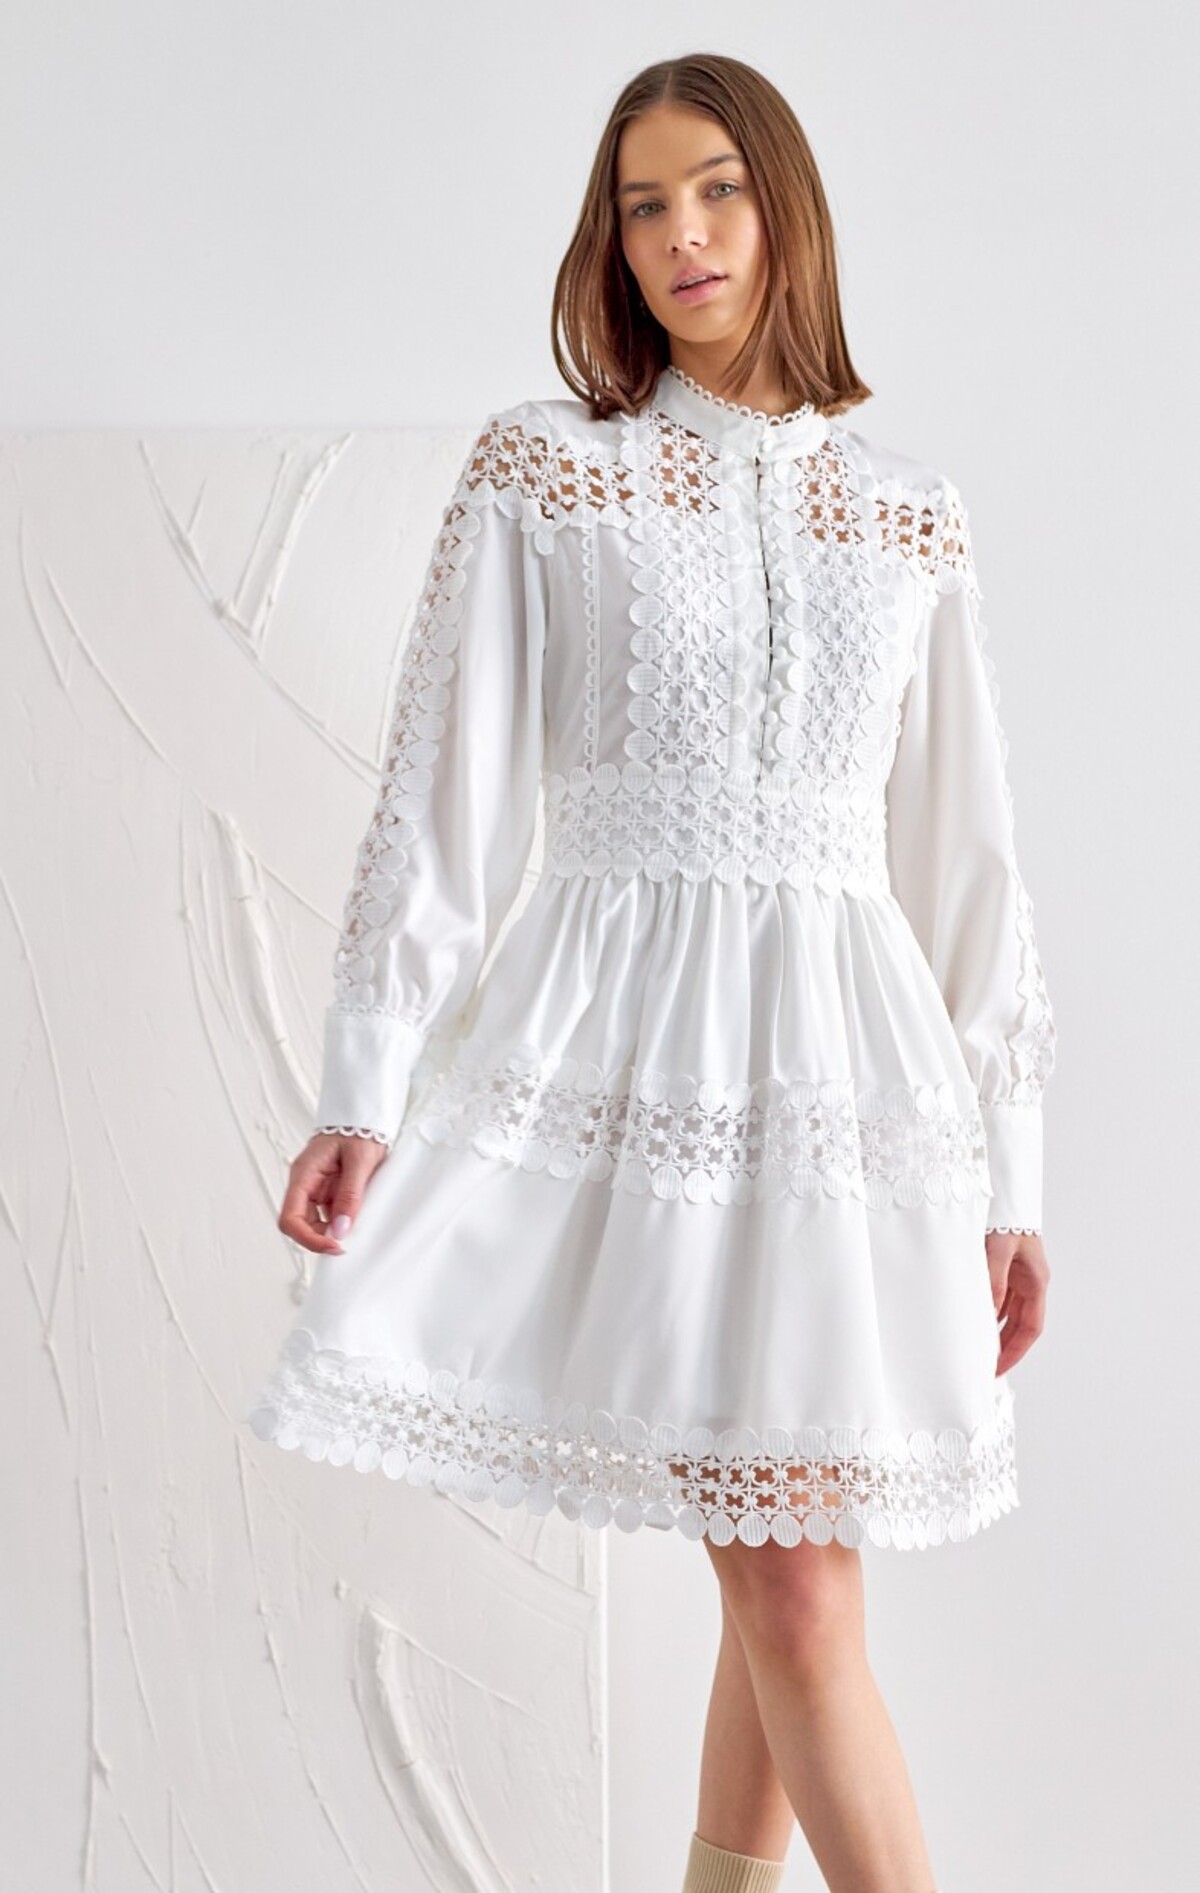 Biele romantické šaty Mercy od Glash môžeš mať už za 54,99 eura.